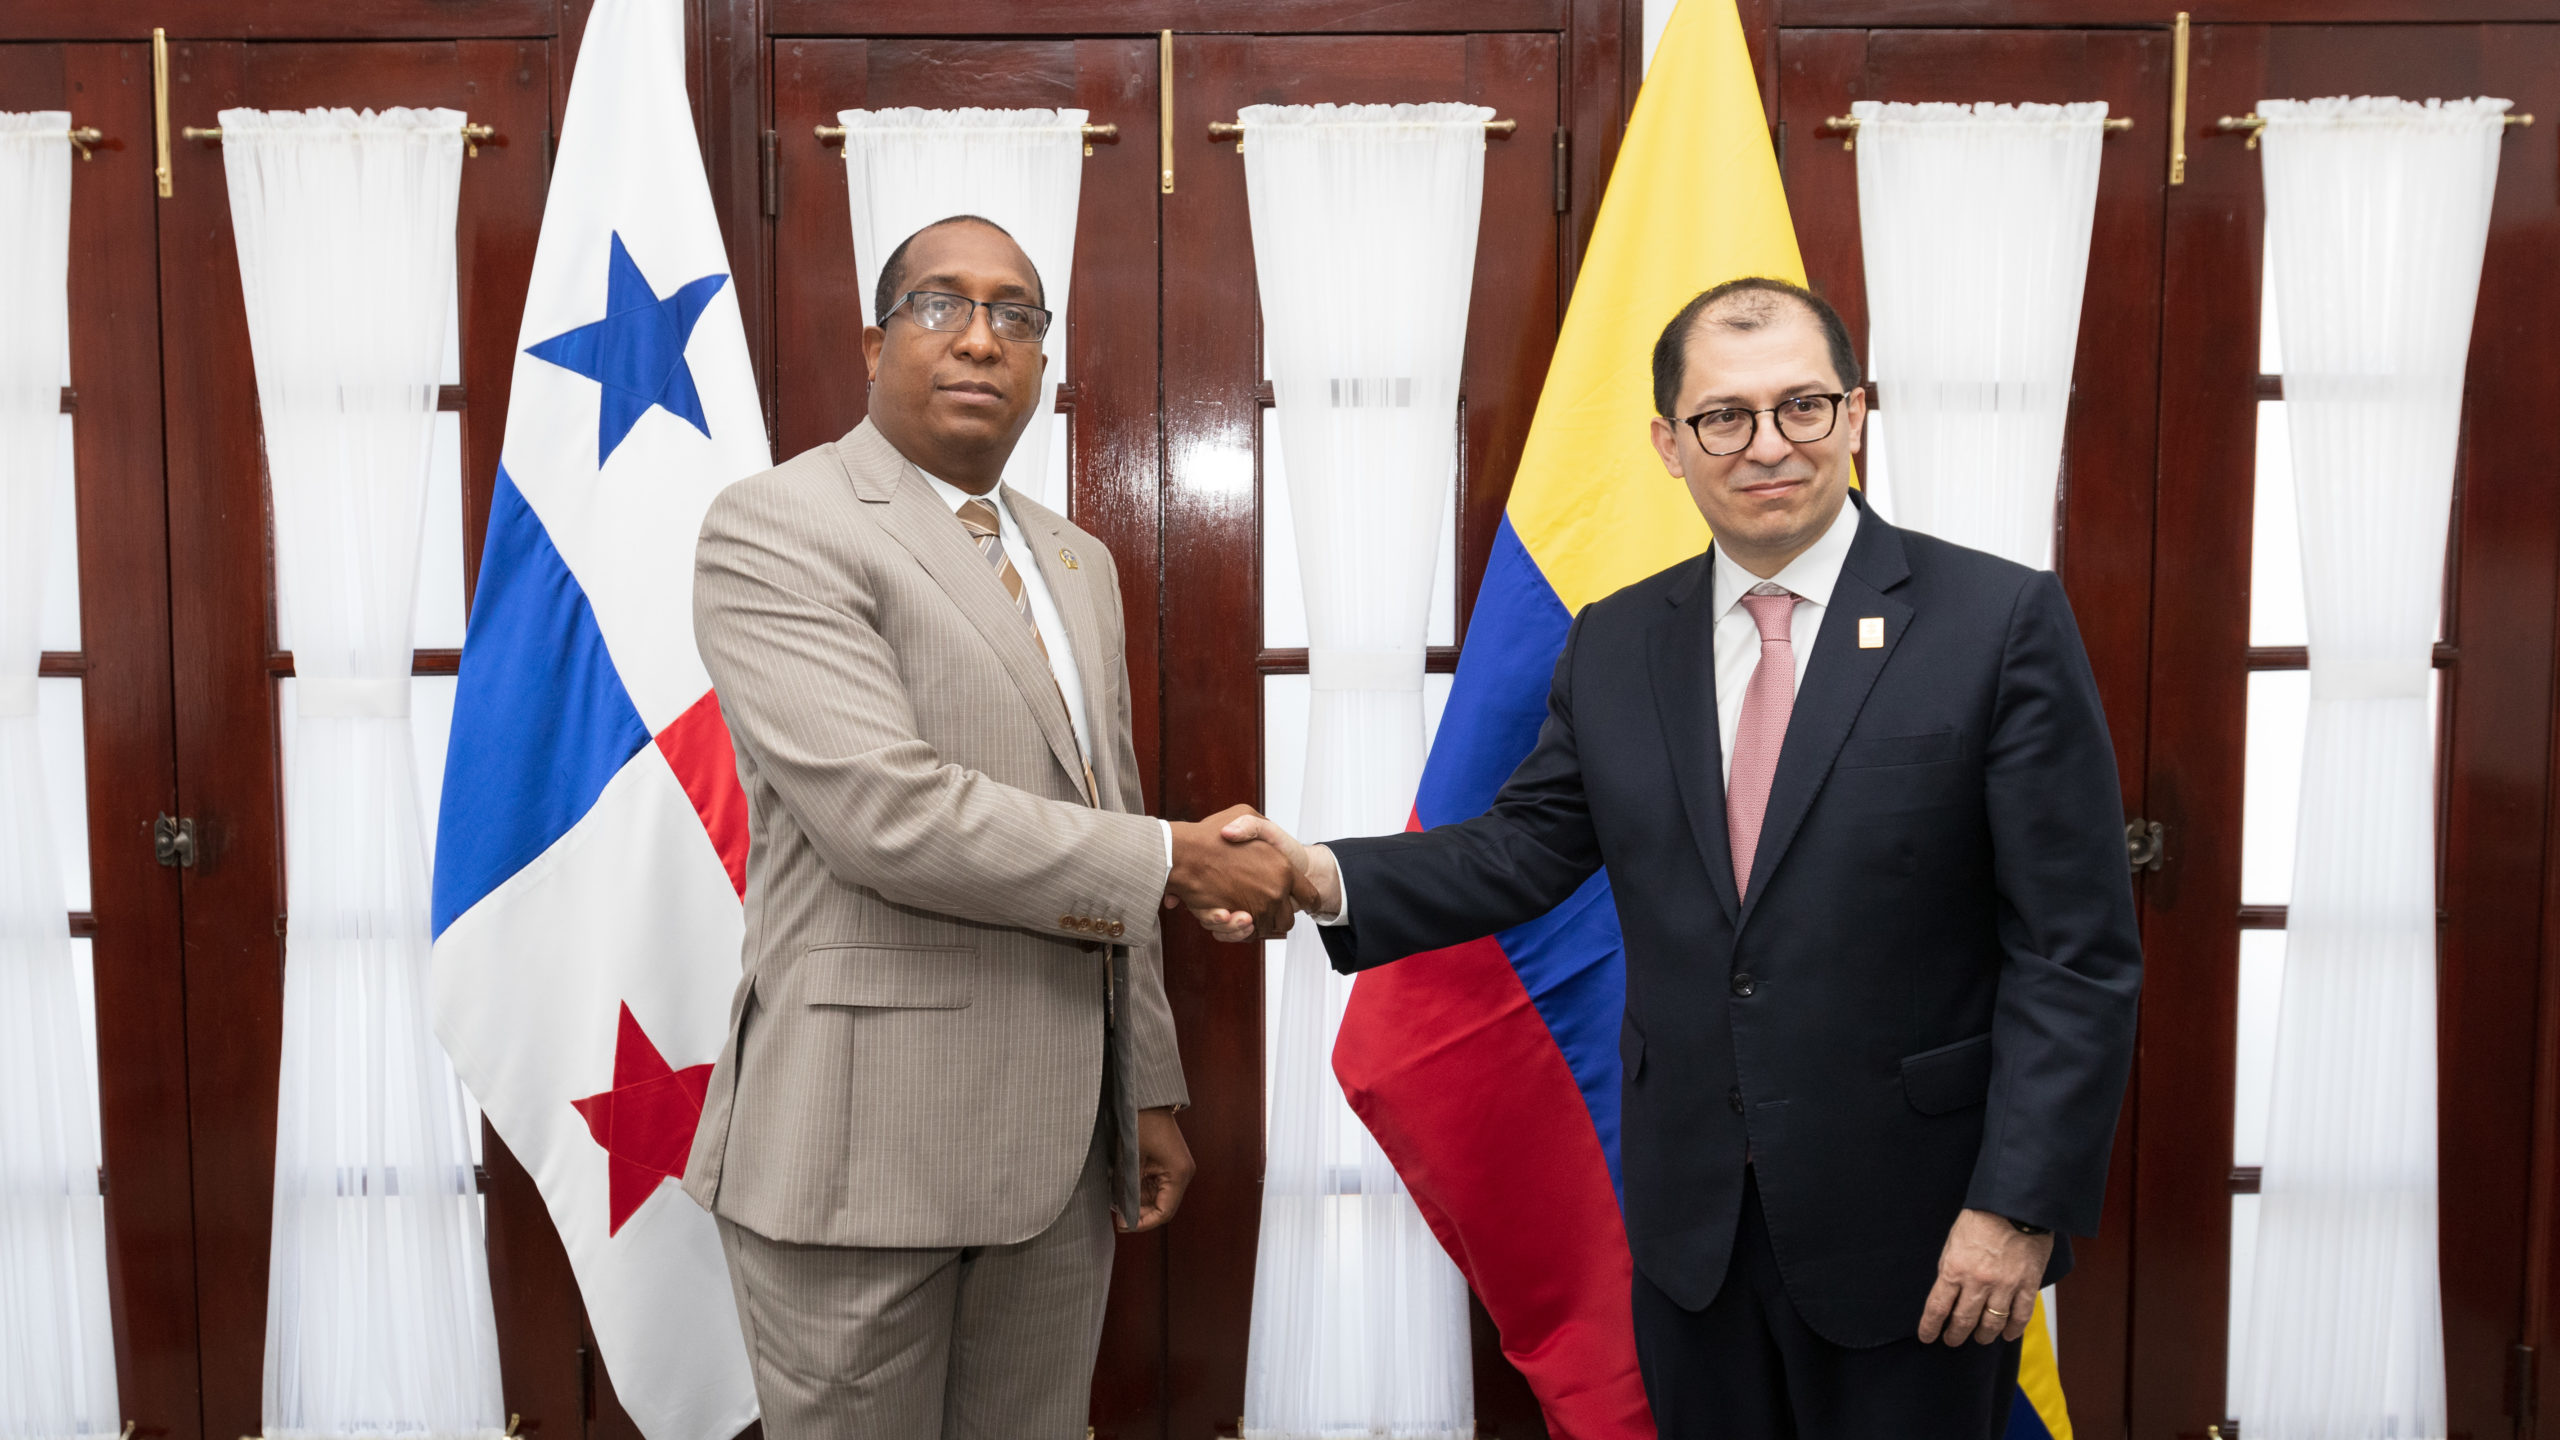 Procurador Caraballo Salazar recibe al Fiscal General de Colombia, como parte de las acciones para fortalecer la cooperación en la lucha contra el crimen organizado transnacional